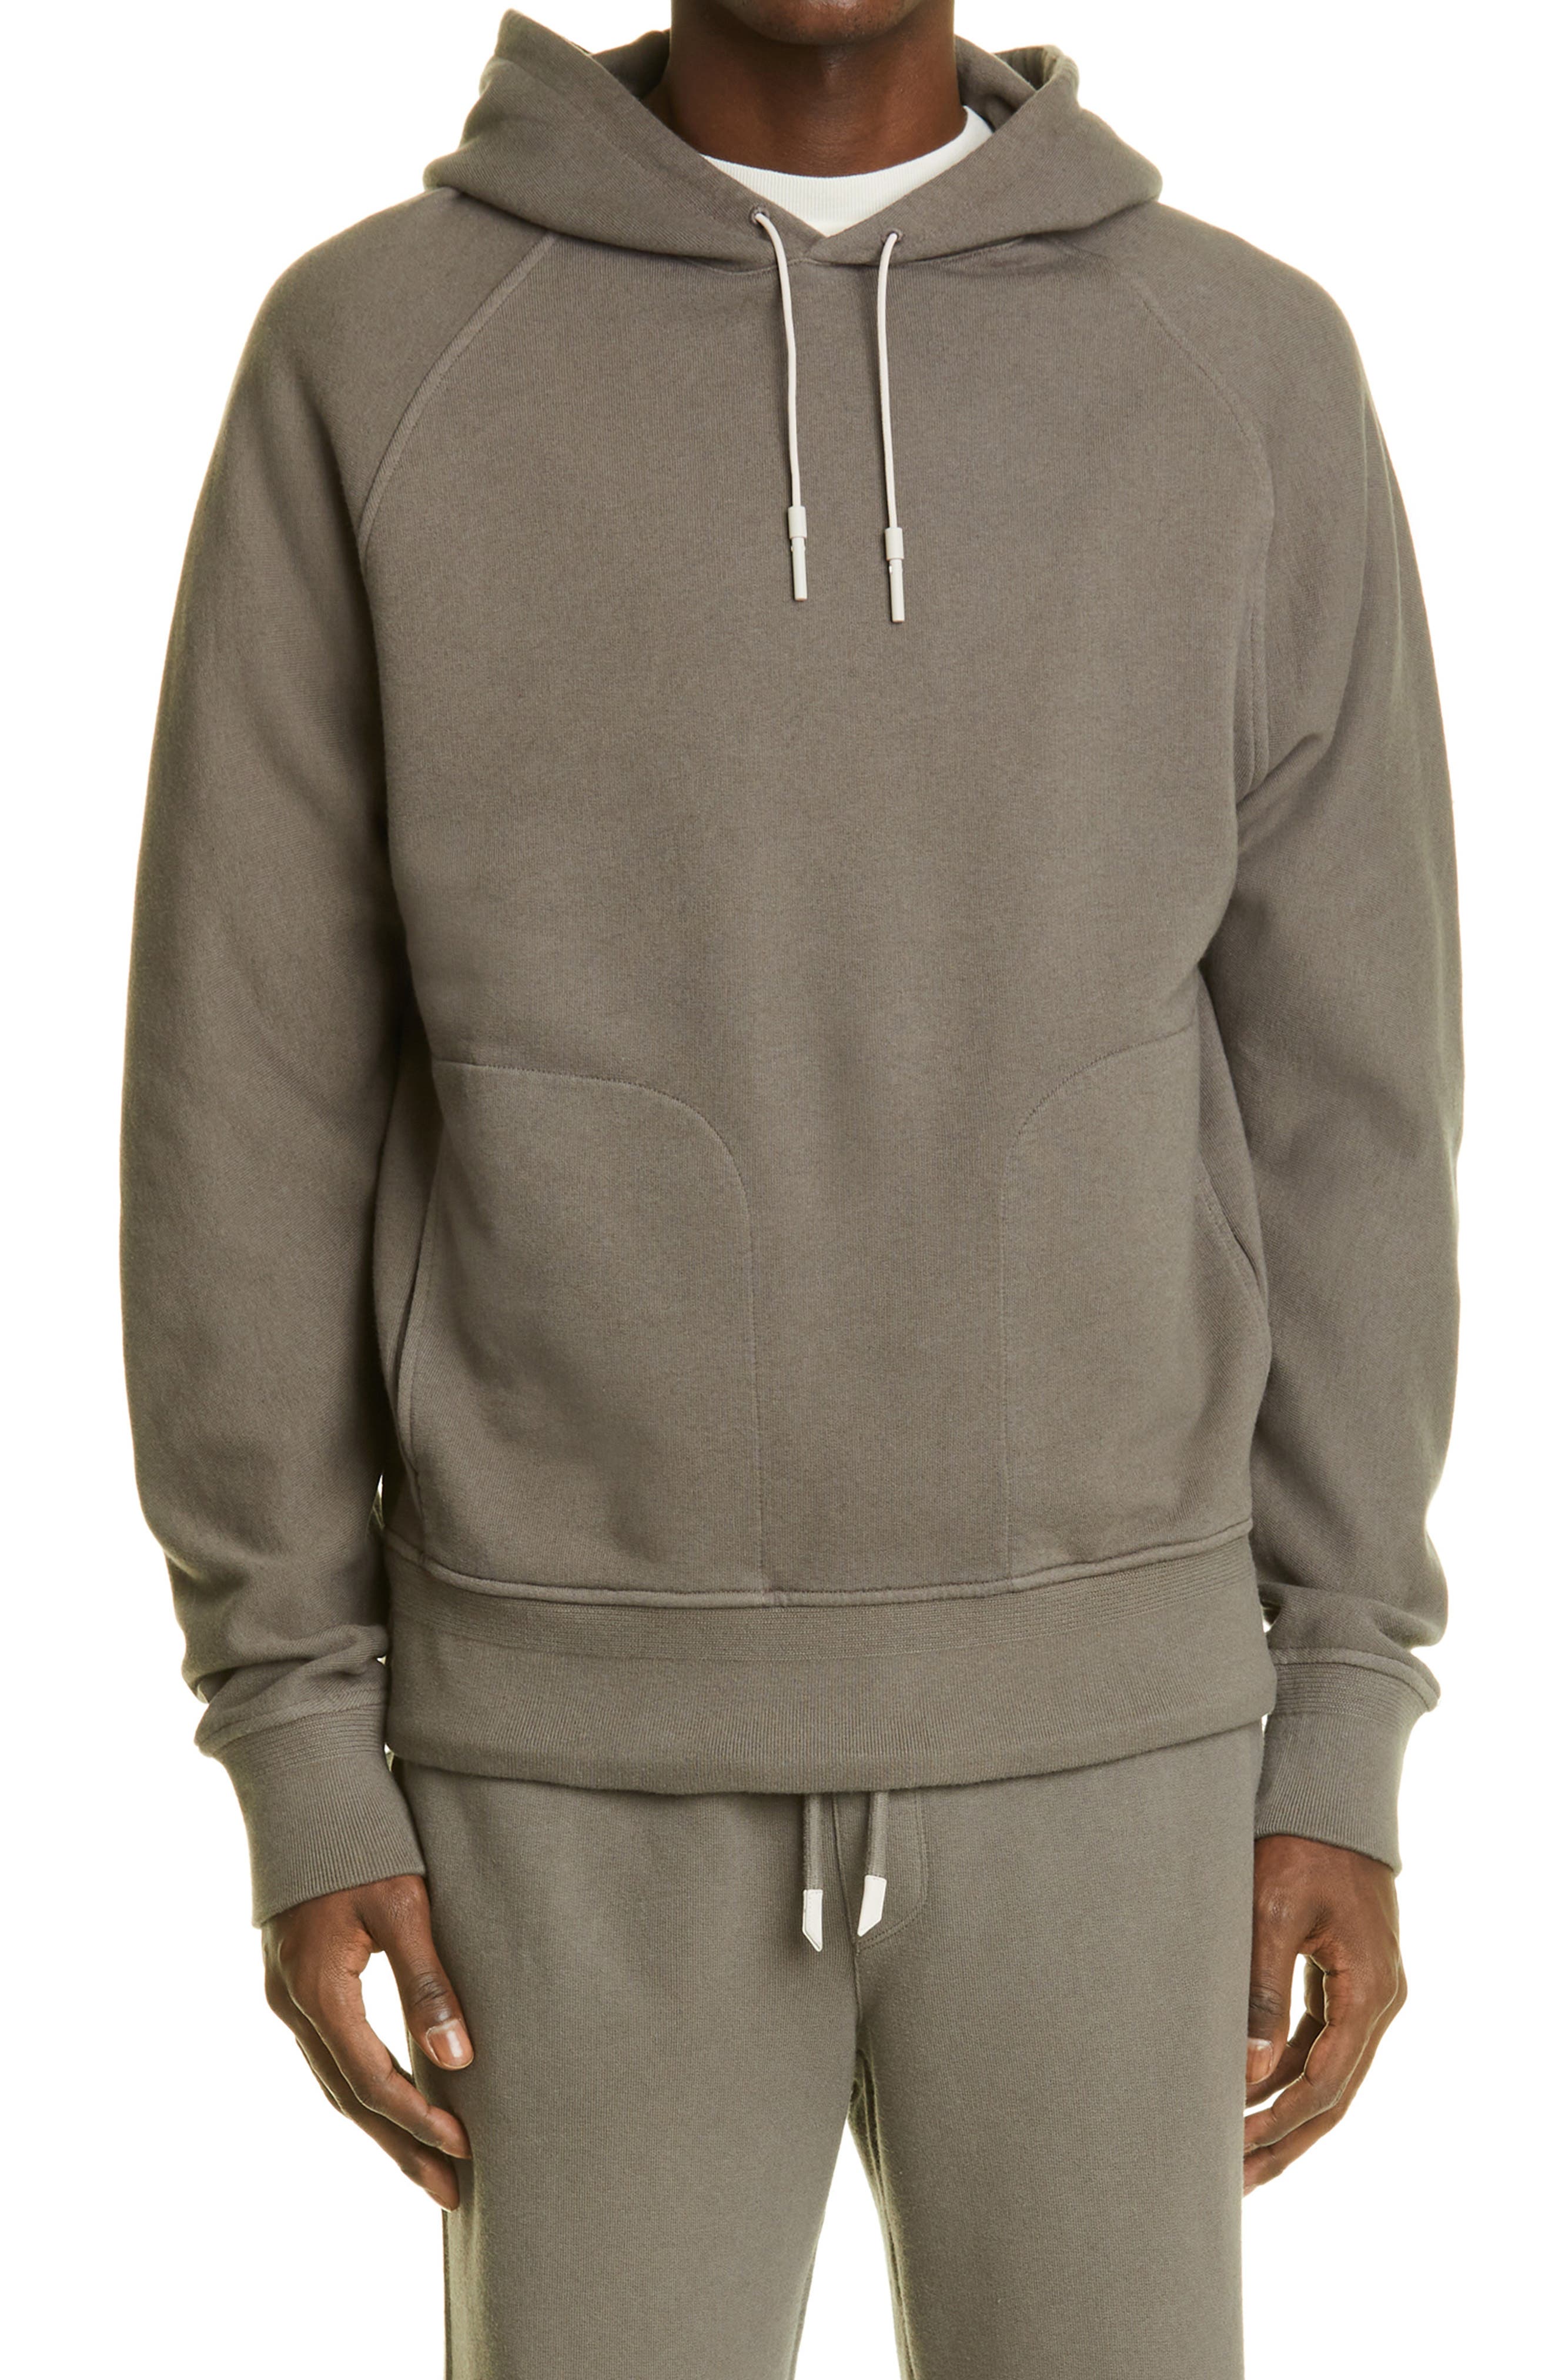 CQR Mens Outdoor Pullover Hoodie Performance Top Active Fleece Sweatshirt 